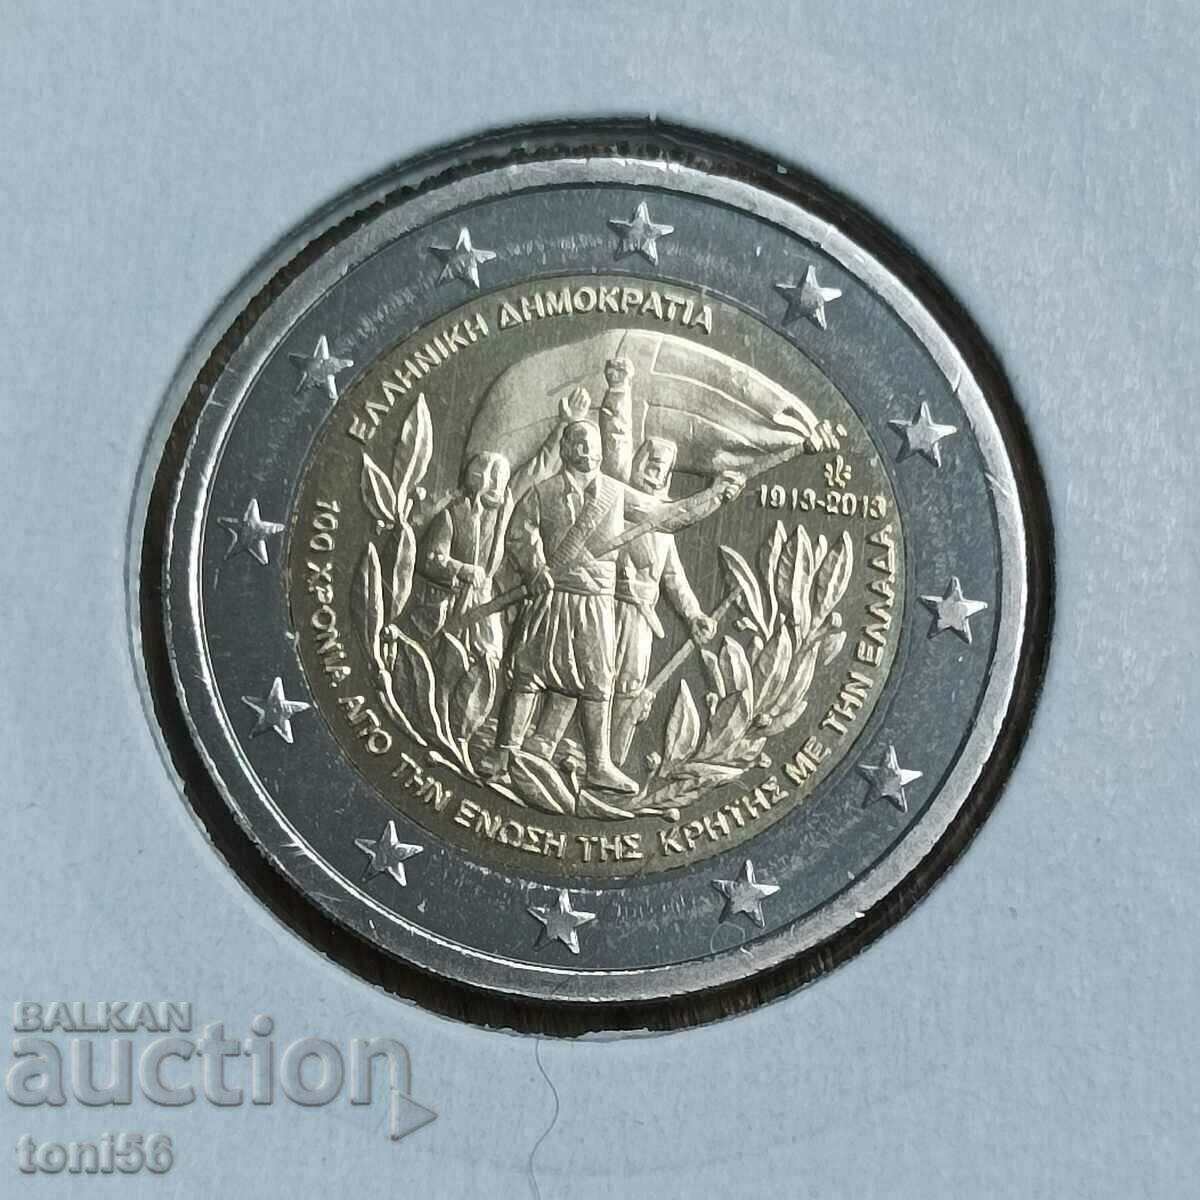 Grecia 2 euro 2013 - Creta